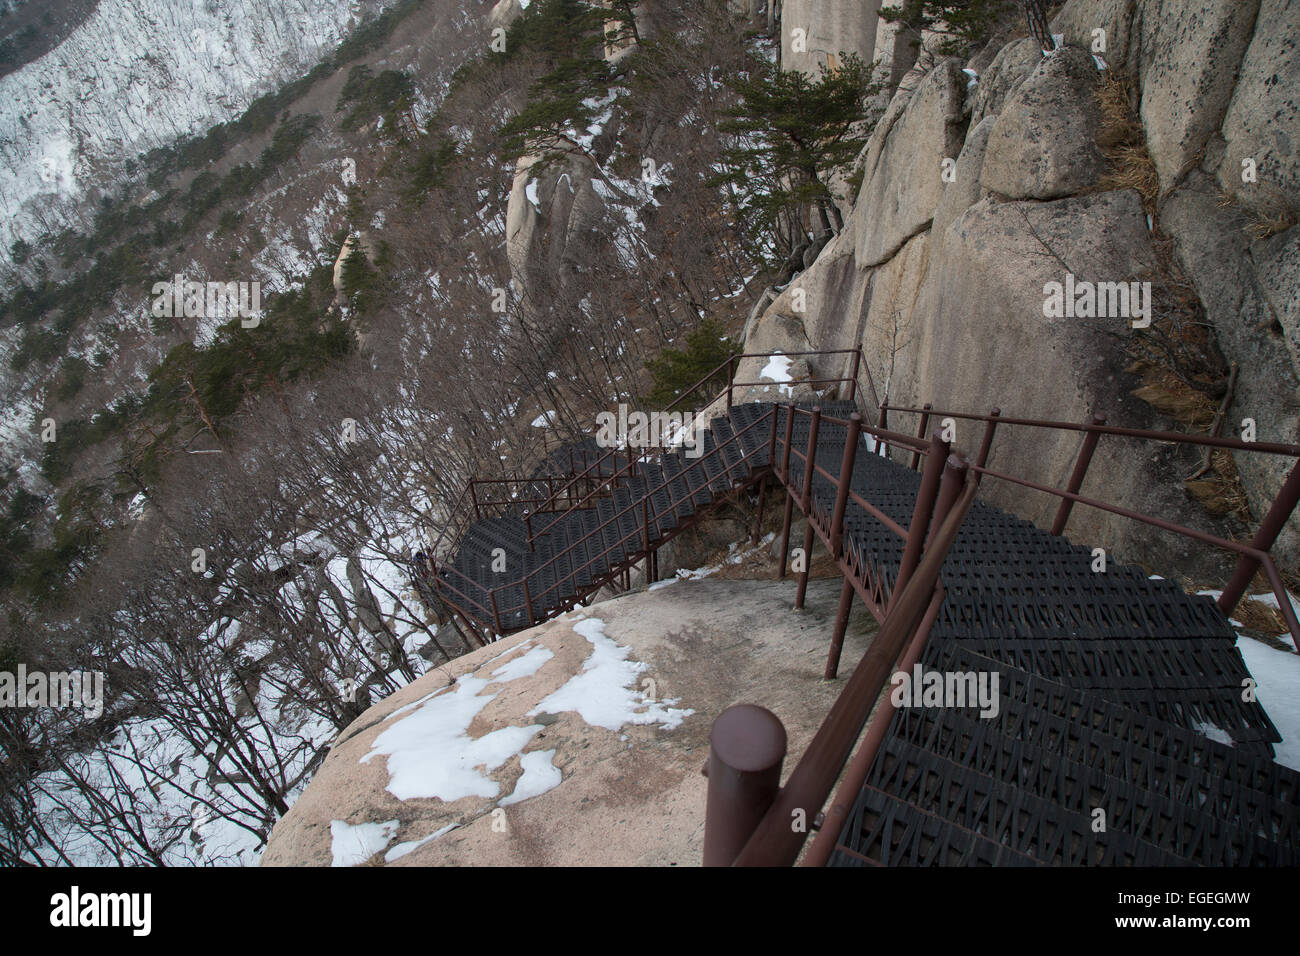 Le Parc National de Seoraksan en hiver. Balade à Ulsanbawi Rock. Sokcho, Corée du Sud. Montagnes couvertes de neige. Banque D'Images